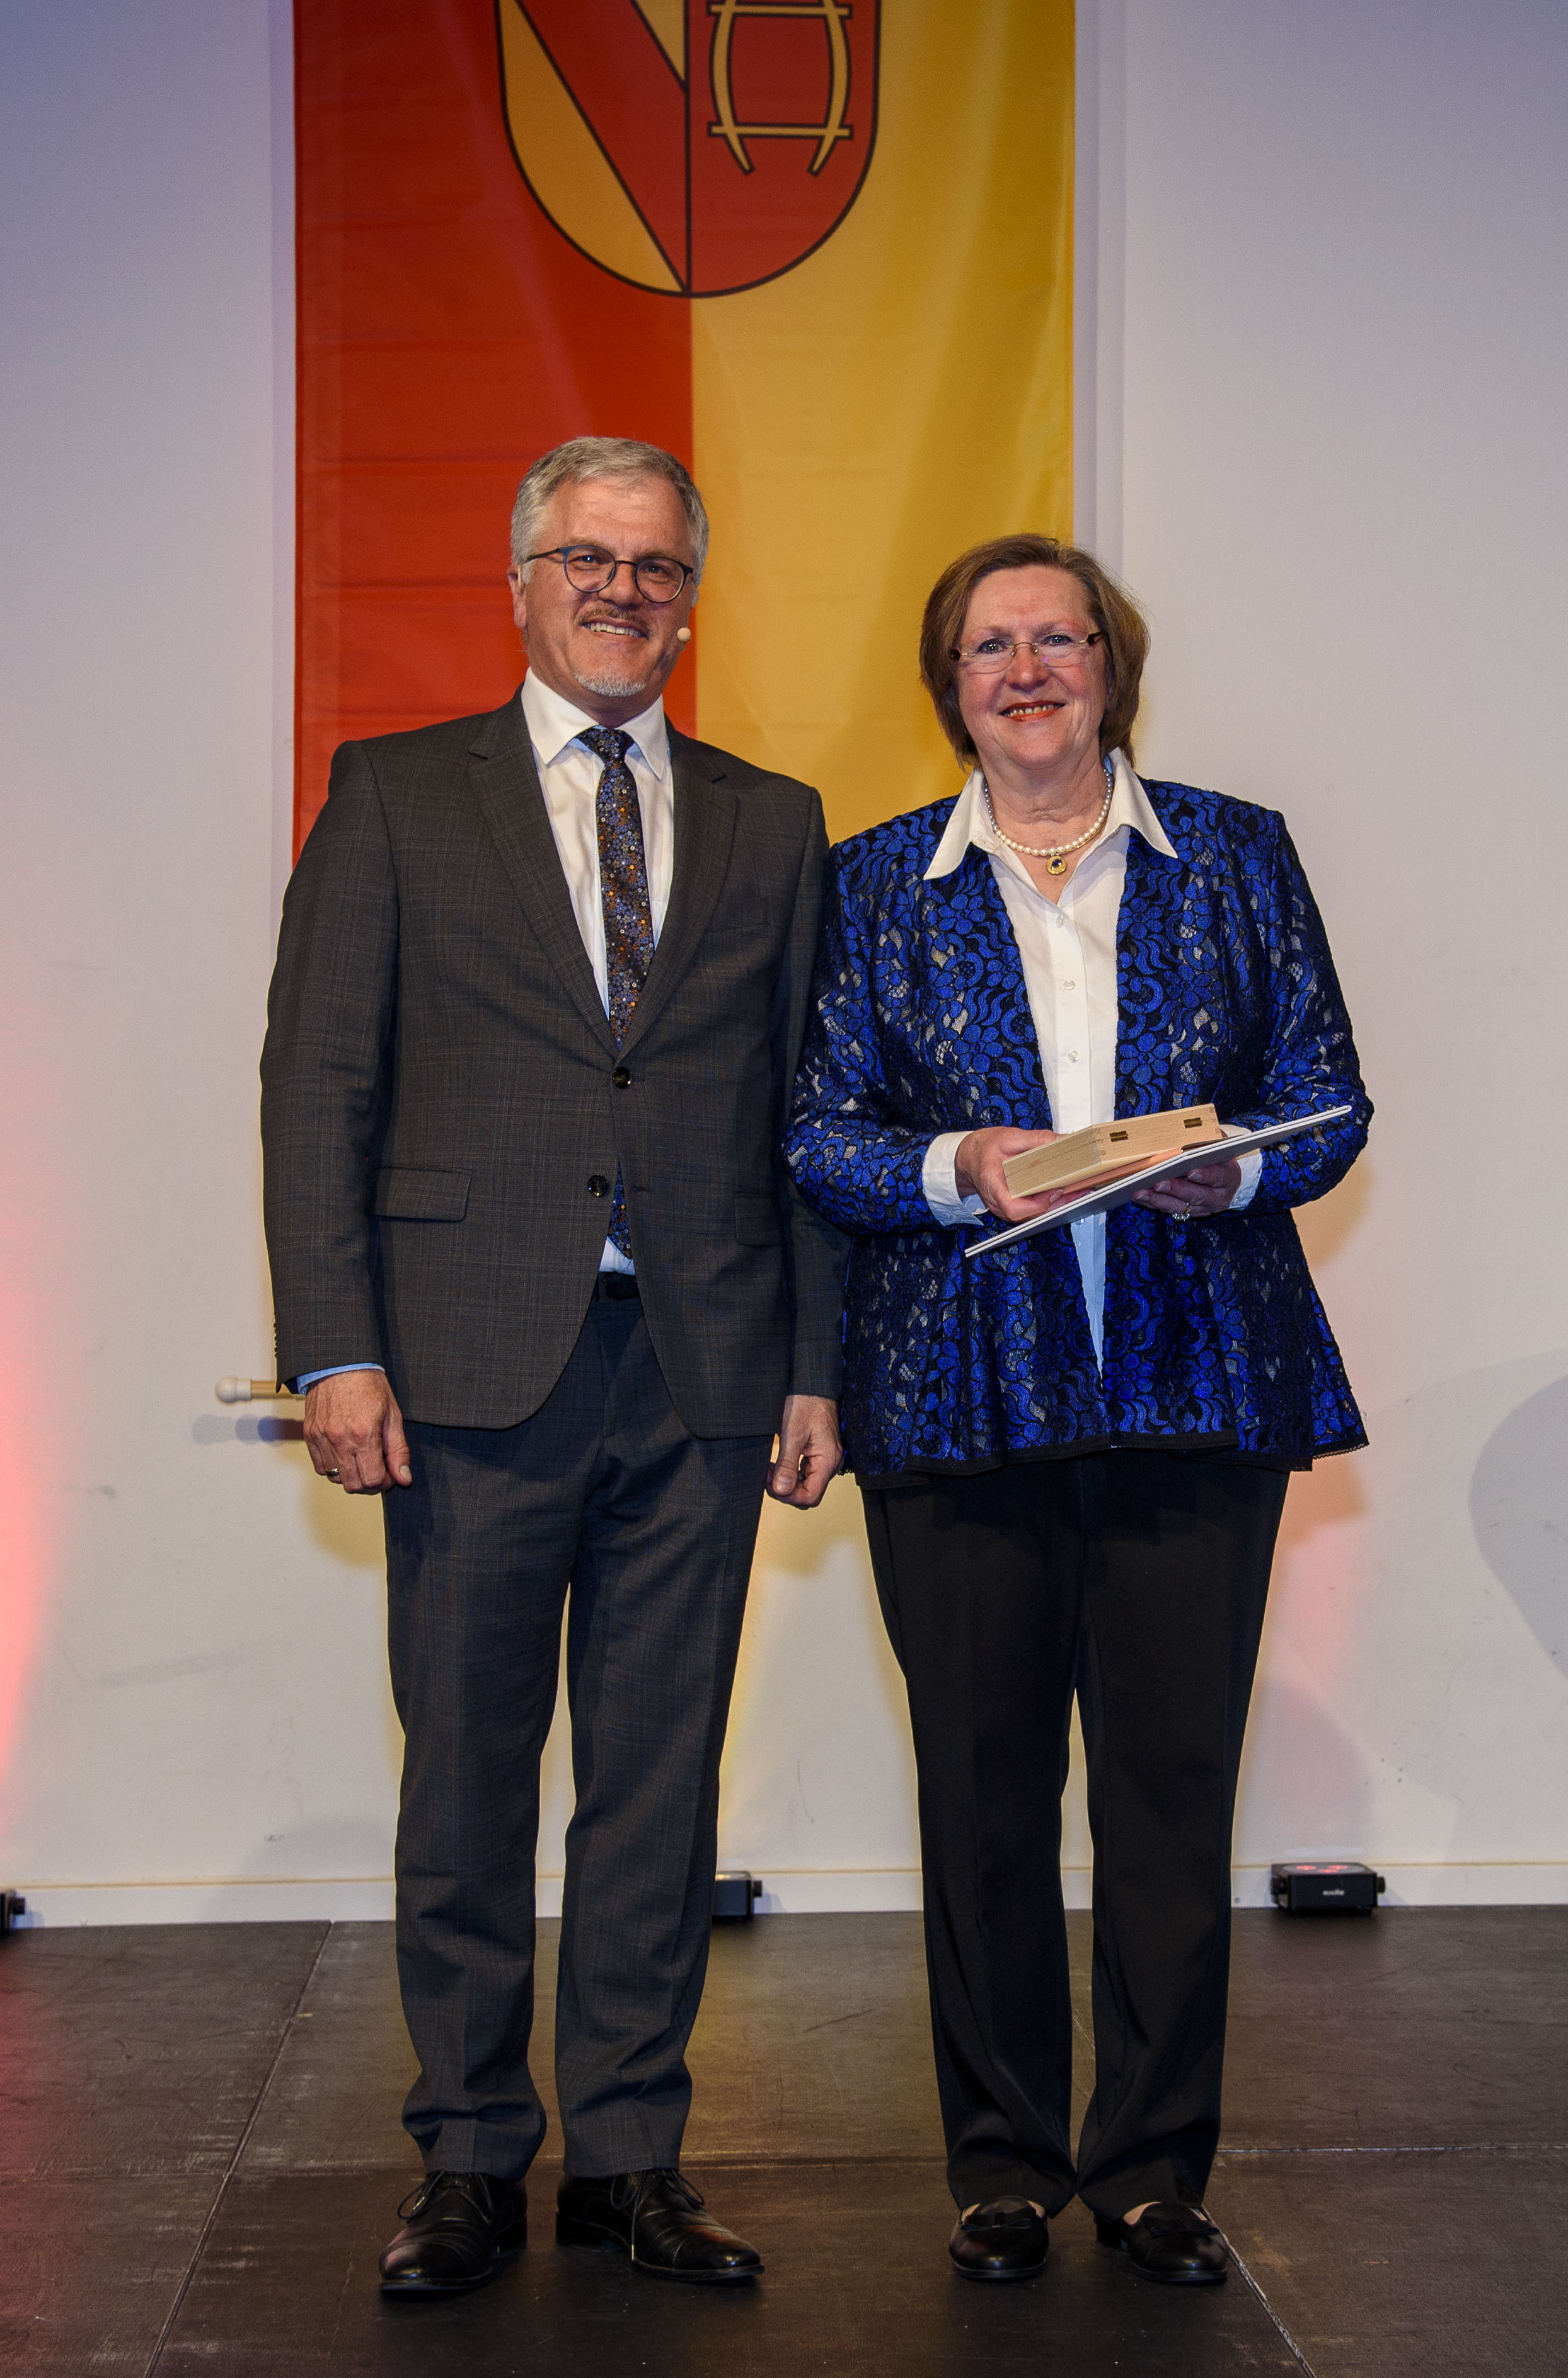 Marianne Schneider bei der Übergabe der goldenen Ehrennadel gemeinsam mit dem Oberbürgermeister Hans Jürgen Pütsch.